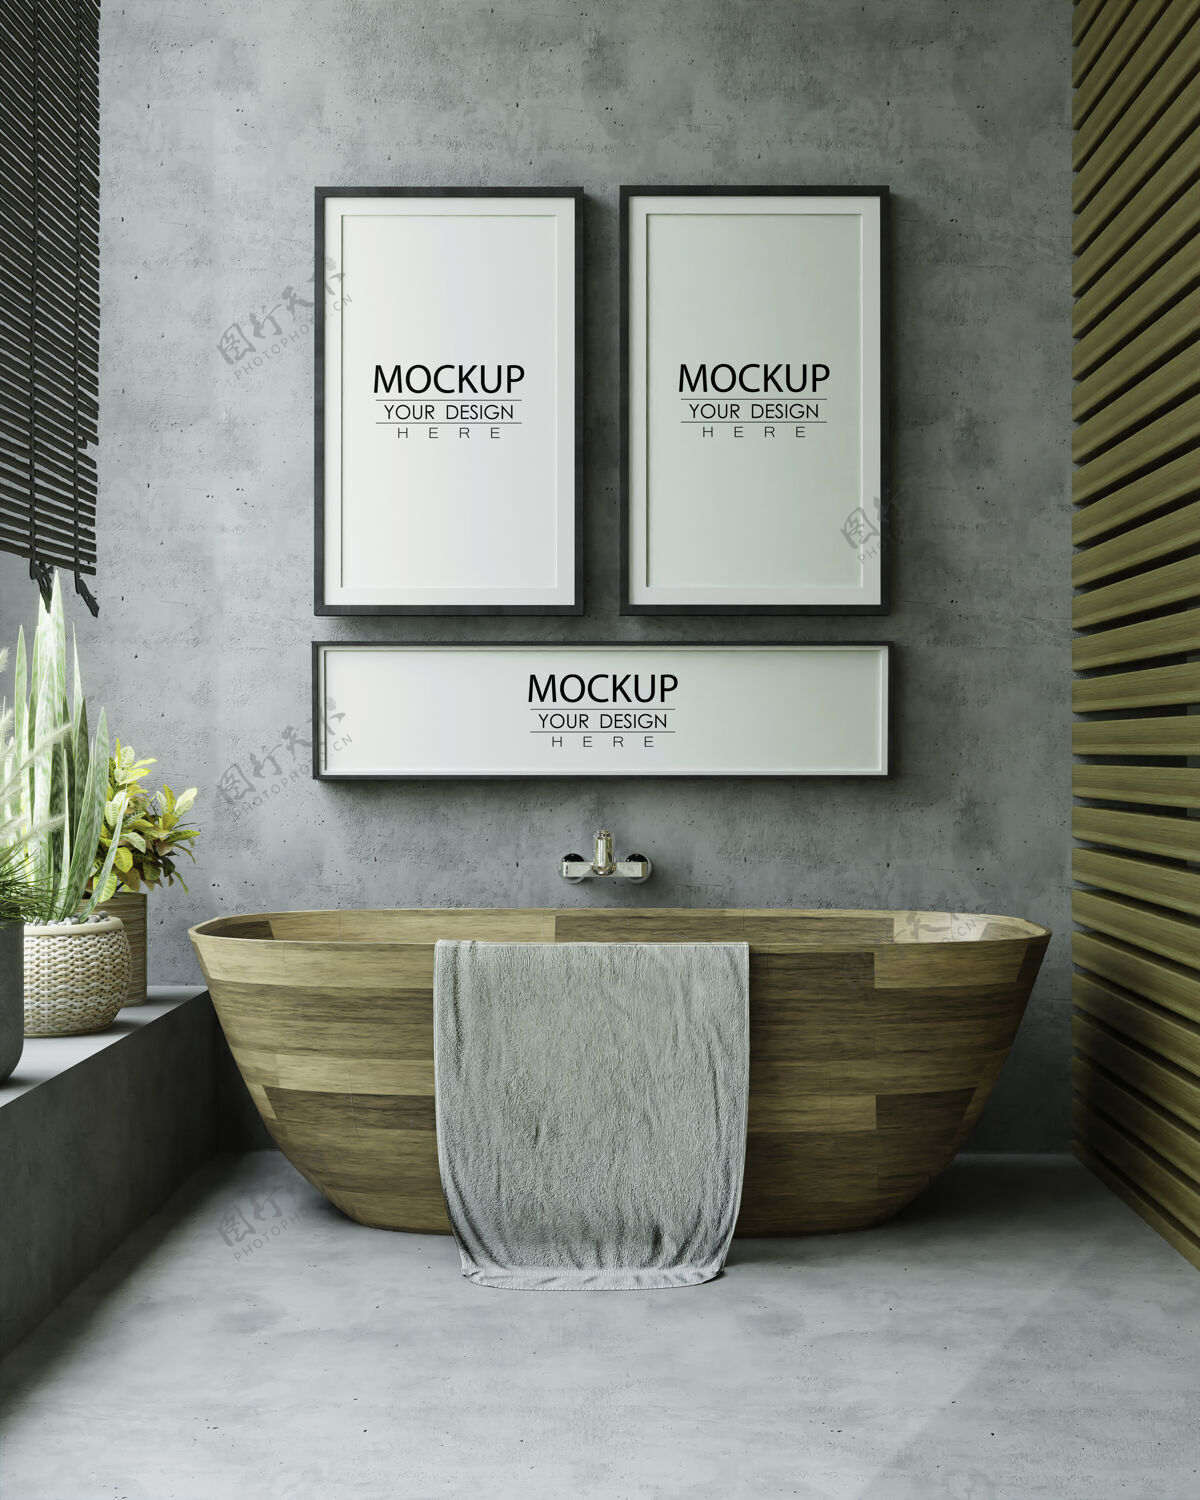 墙浴室内部海报框架模型家具3d墙模型